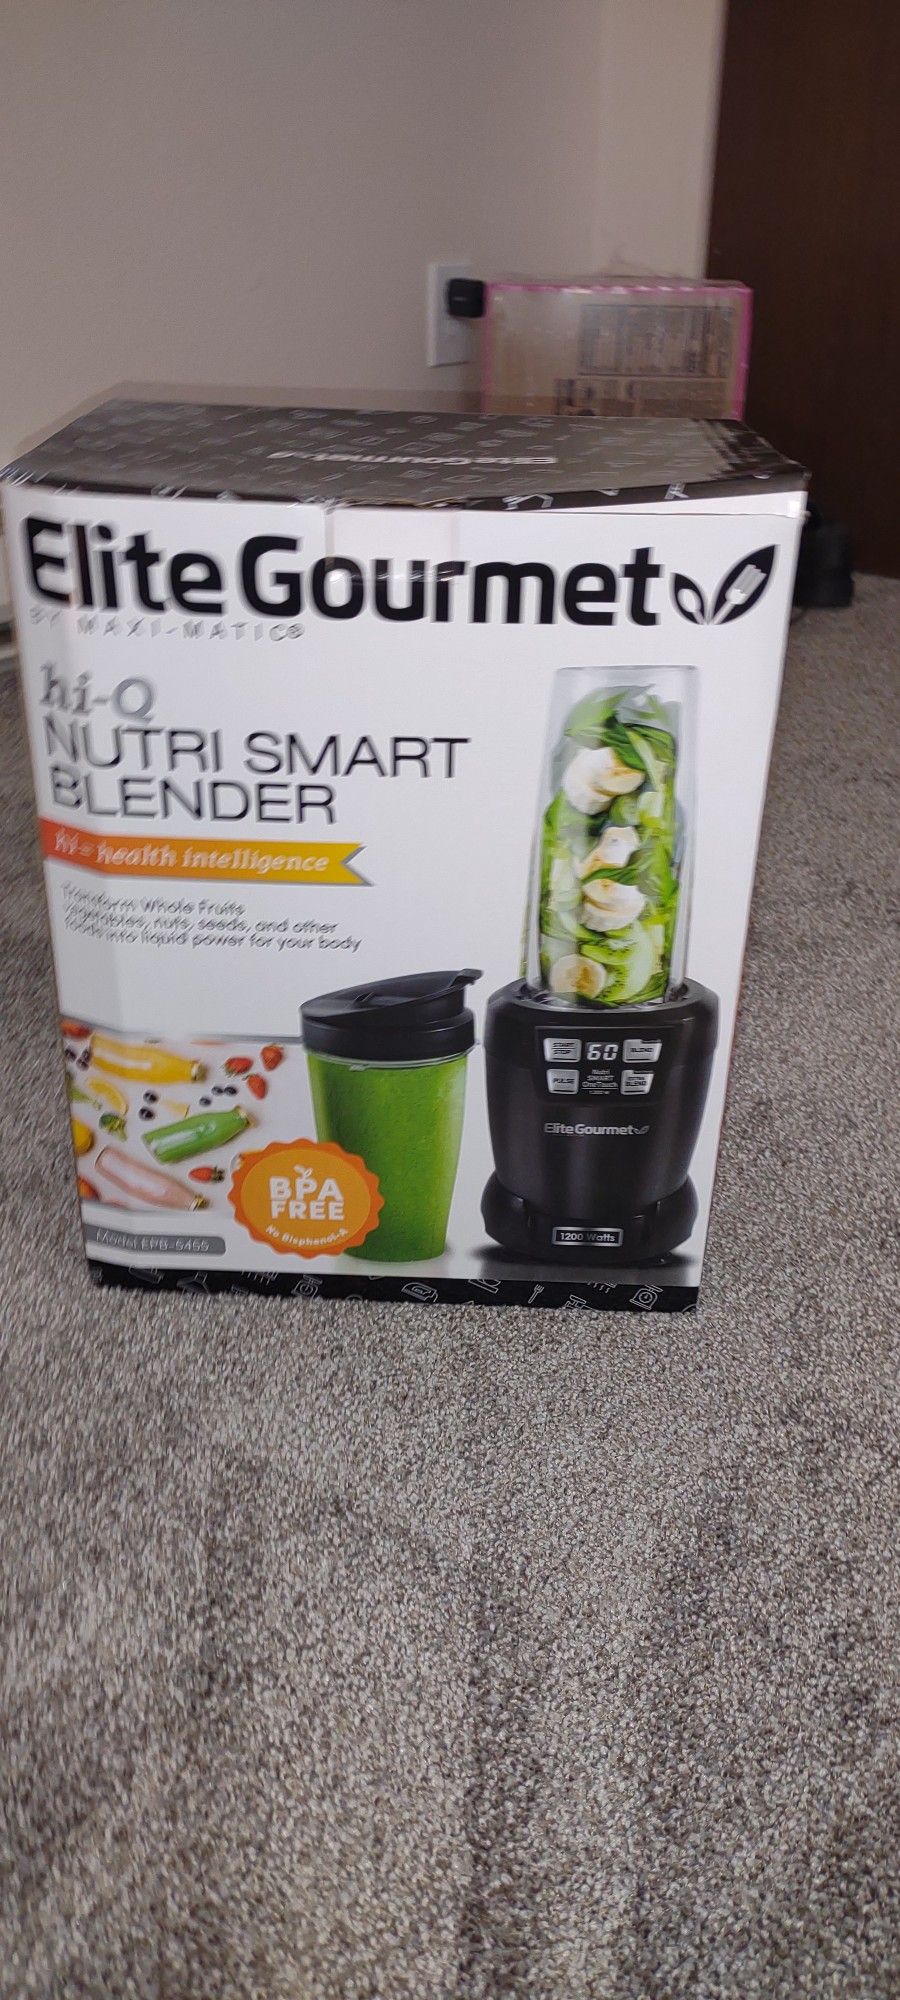 Hi -Q Nutri Smart Blender